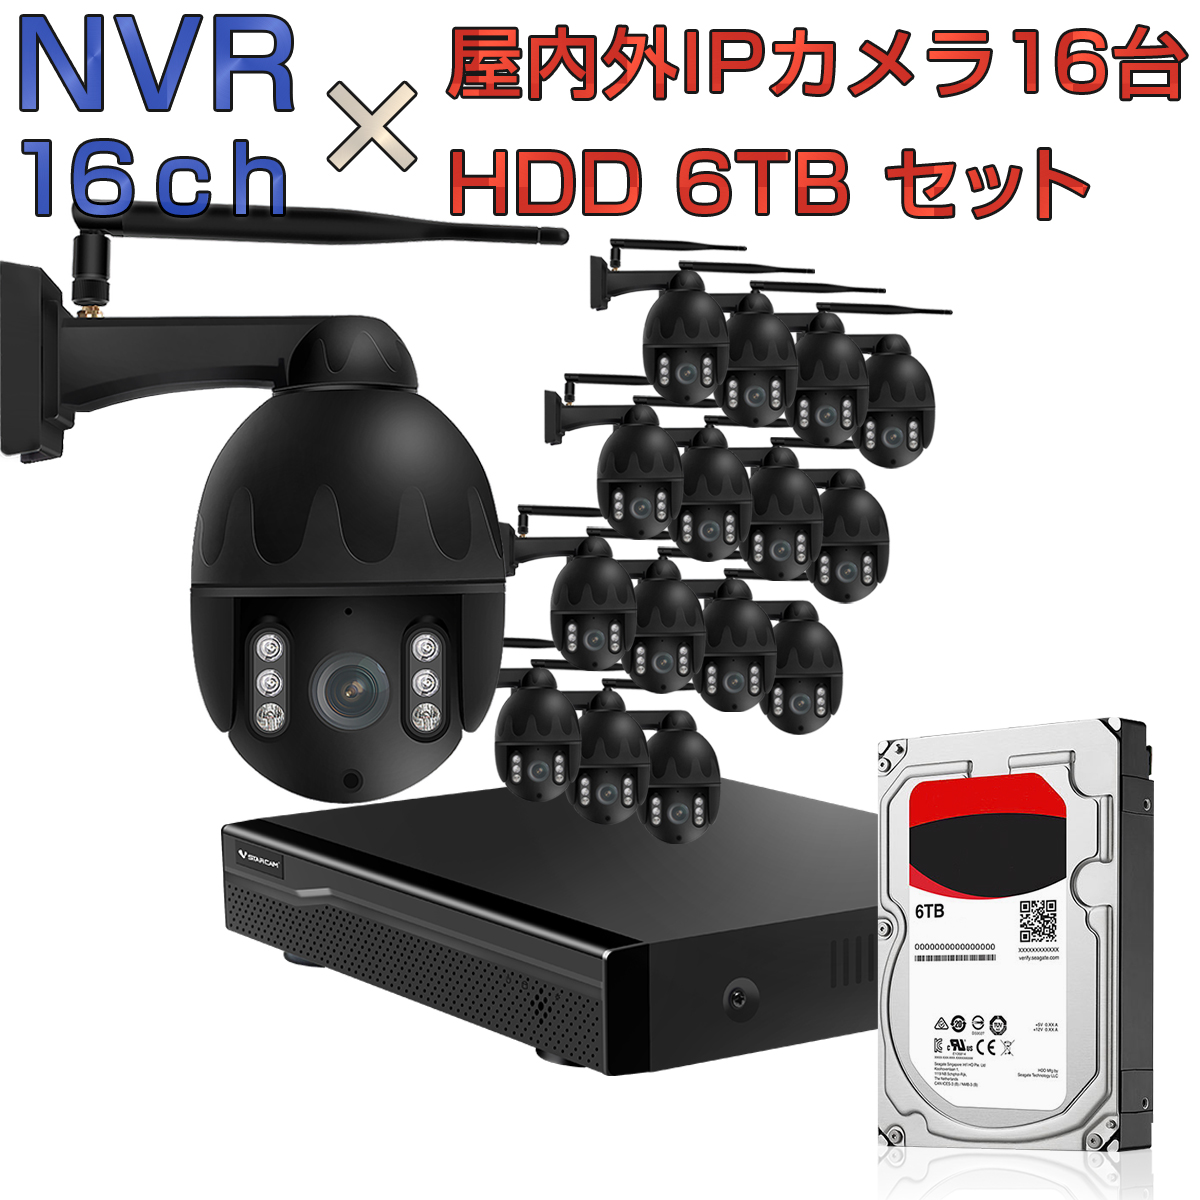 防犯カメラ ワイヤレス wifi 簡単 設置 連続録画 16台を同時に録画可能 ルーター経由接続 ONVIF形式 NVR ネットワークビデオレコーダー 16ch HDD6TB内蔵 C31S 2K 1080p 200万画素カメラ 16台セット IP ONVIF形式 スマホ対応 遠隔監視 FHD 動体検知 同時出力 録音対応 H.265+ IPカメラレコーダー監視システム PSE認証 6ヶ月保証